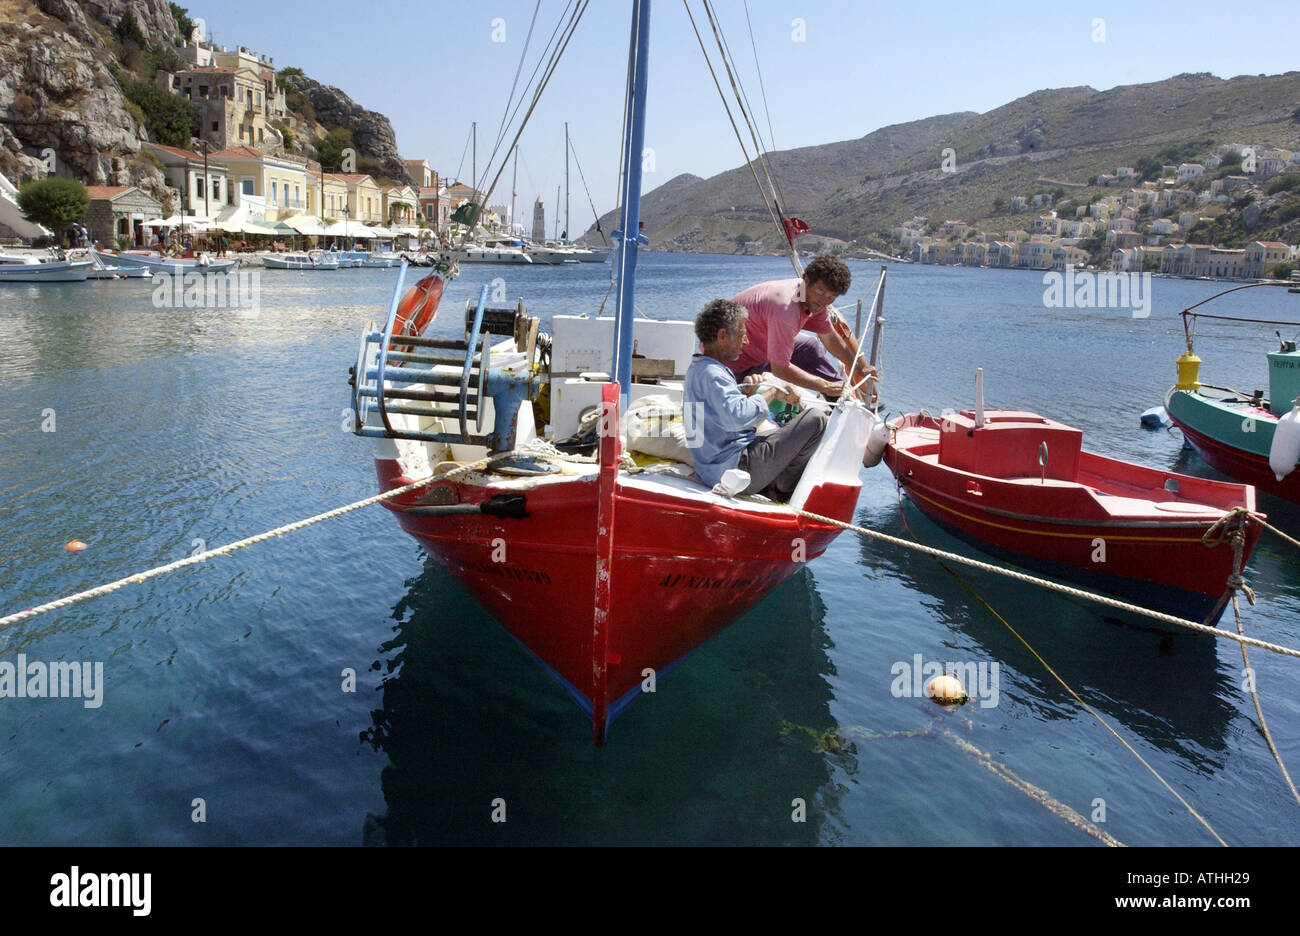 Les pêcheurs de l'île grecque de little red boat peint de couleurs vives. Banque D'Images